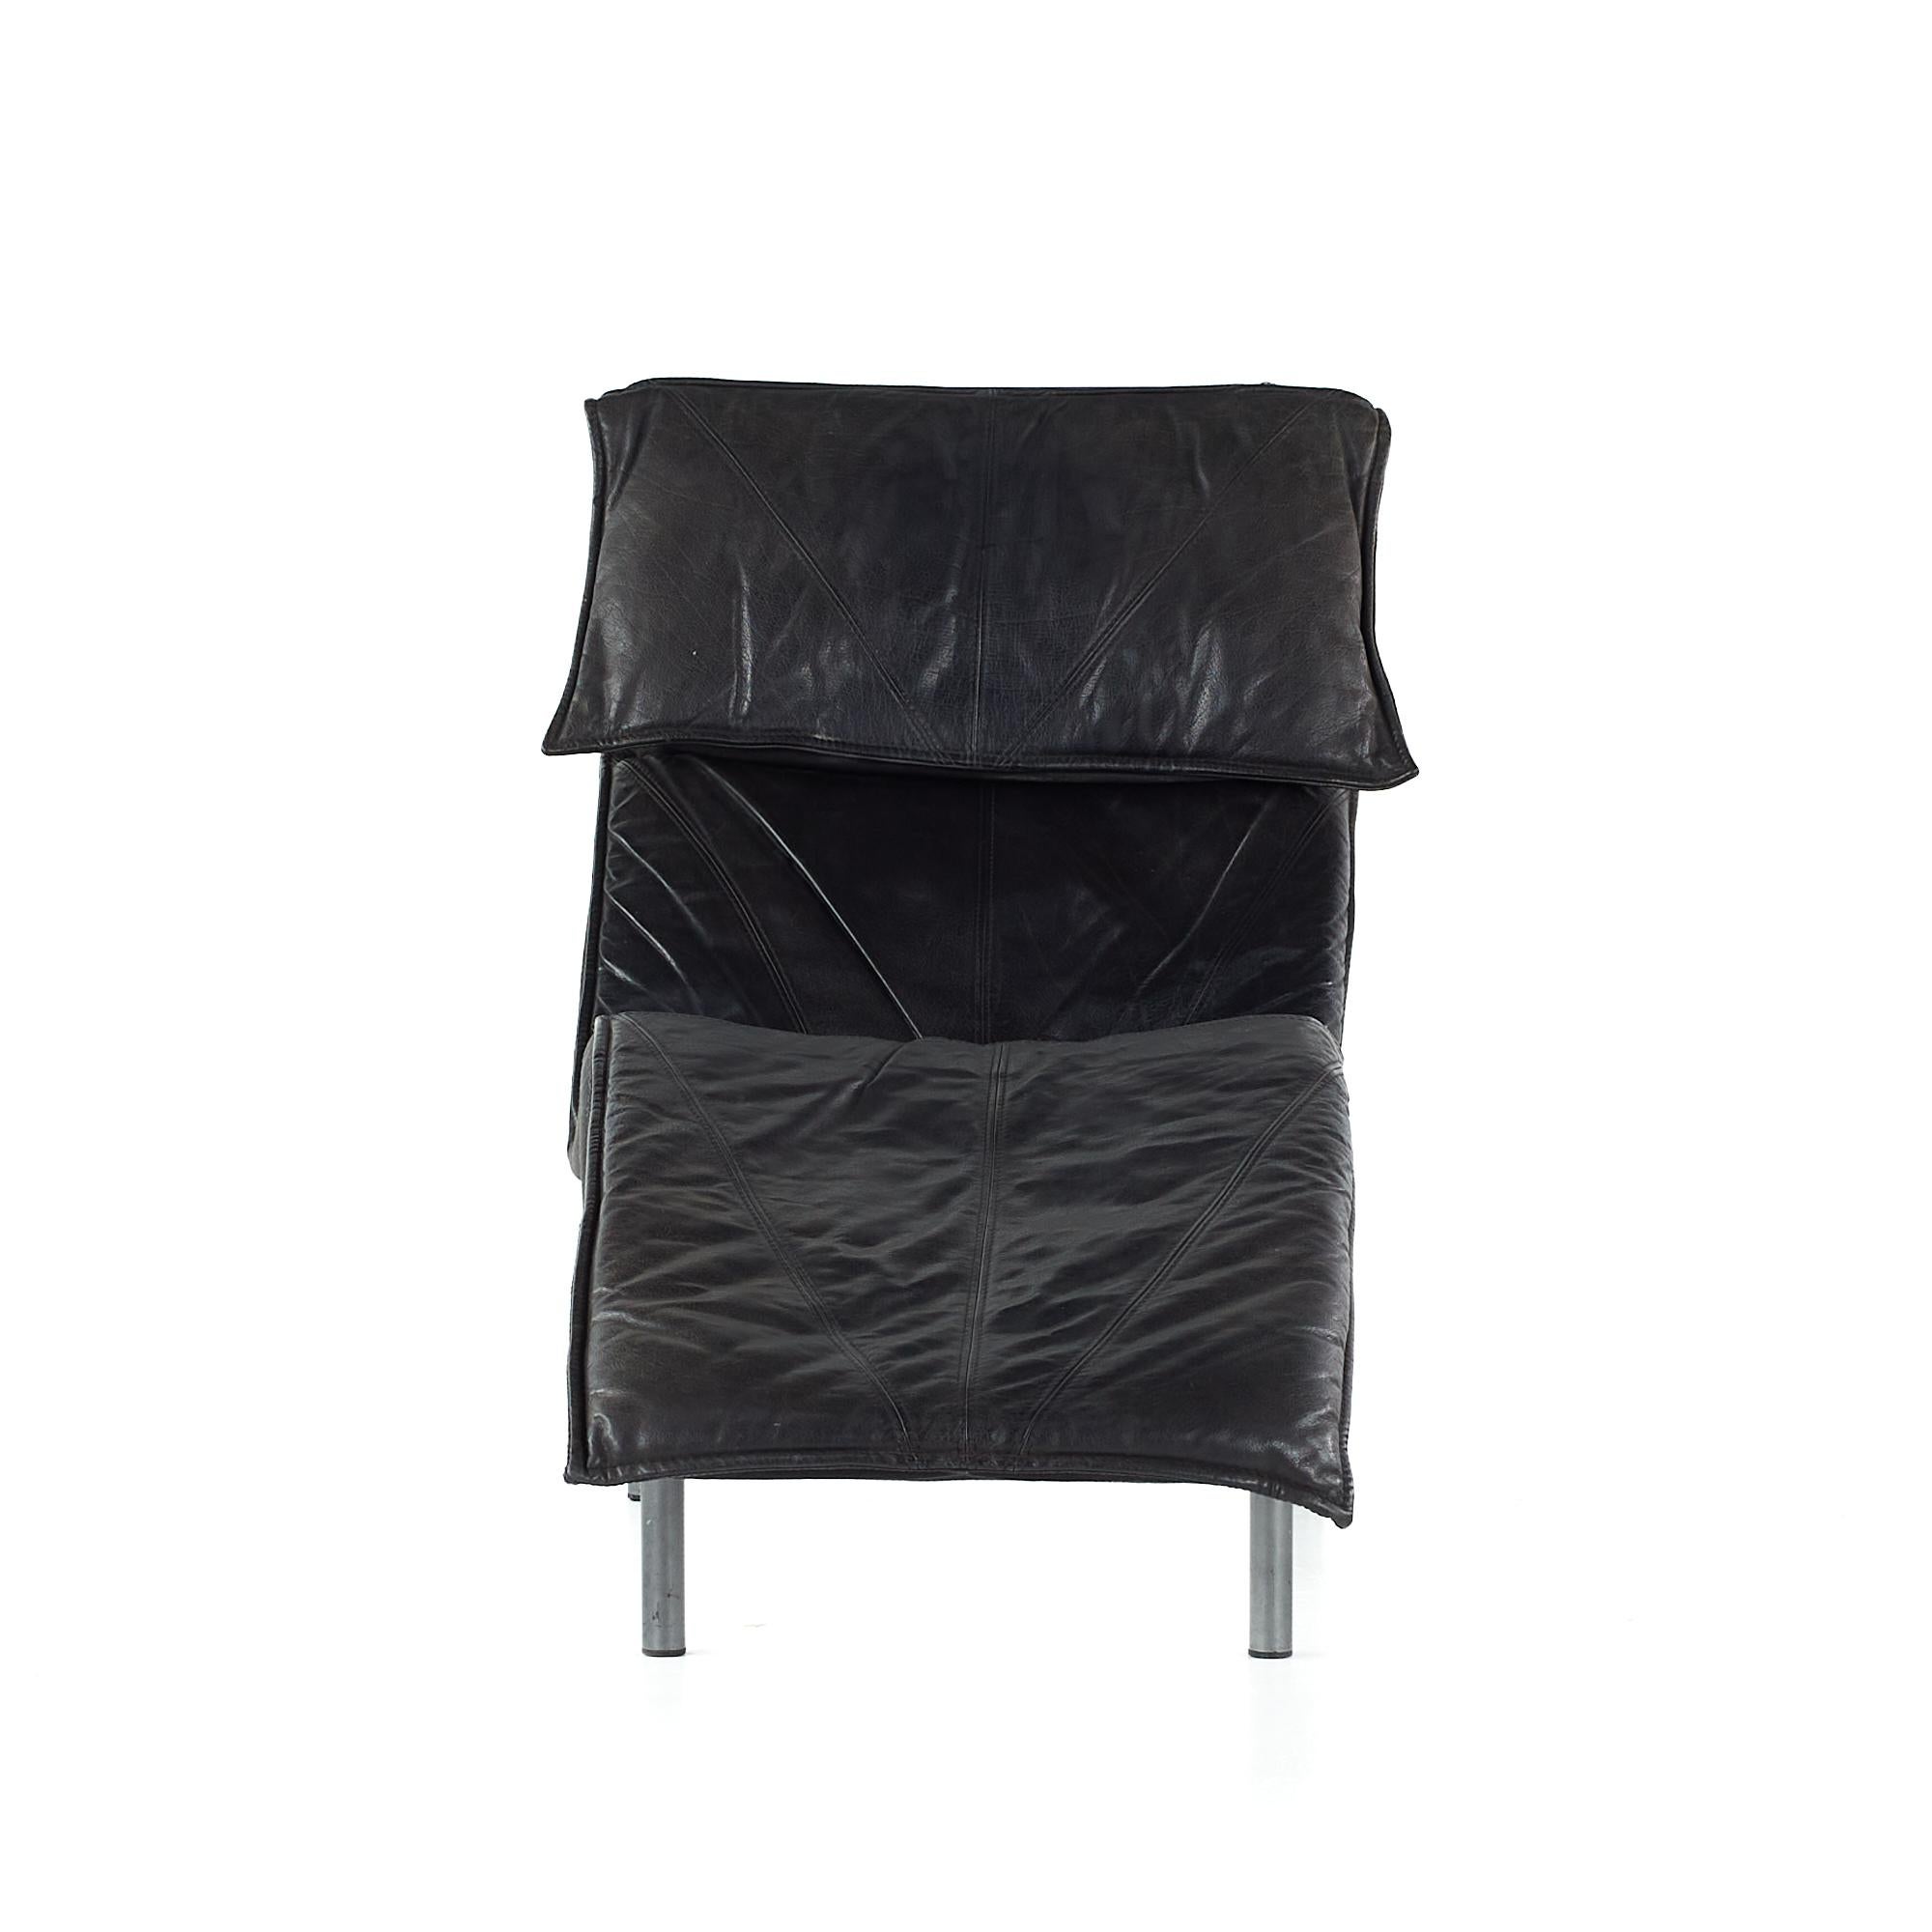 Früher Tord Bjorklund für Ikea Midcentury Chaise Leather Lounge Chair

Diese Chaise misst: 28 breit x 61 tief x 37,5 Zoll hoch mit einer Sitzhöhe von 14 Zoll

Alle Möbelstücke sind in einem so genannten restaurierten Vintage-Zustand zu haben.